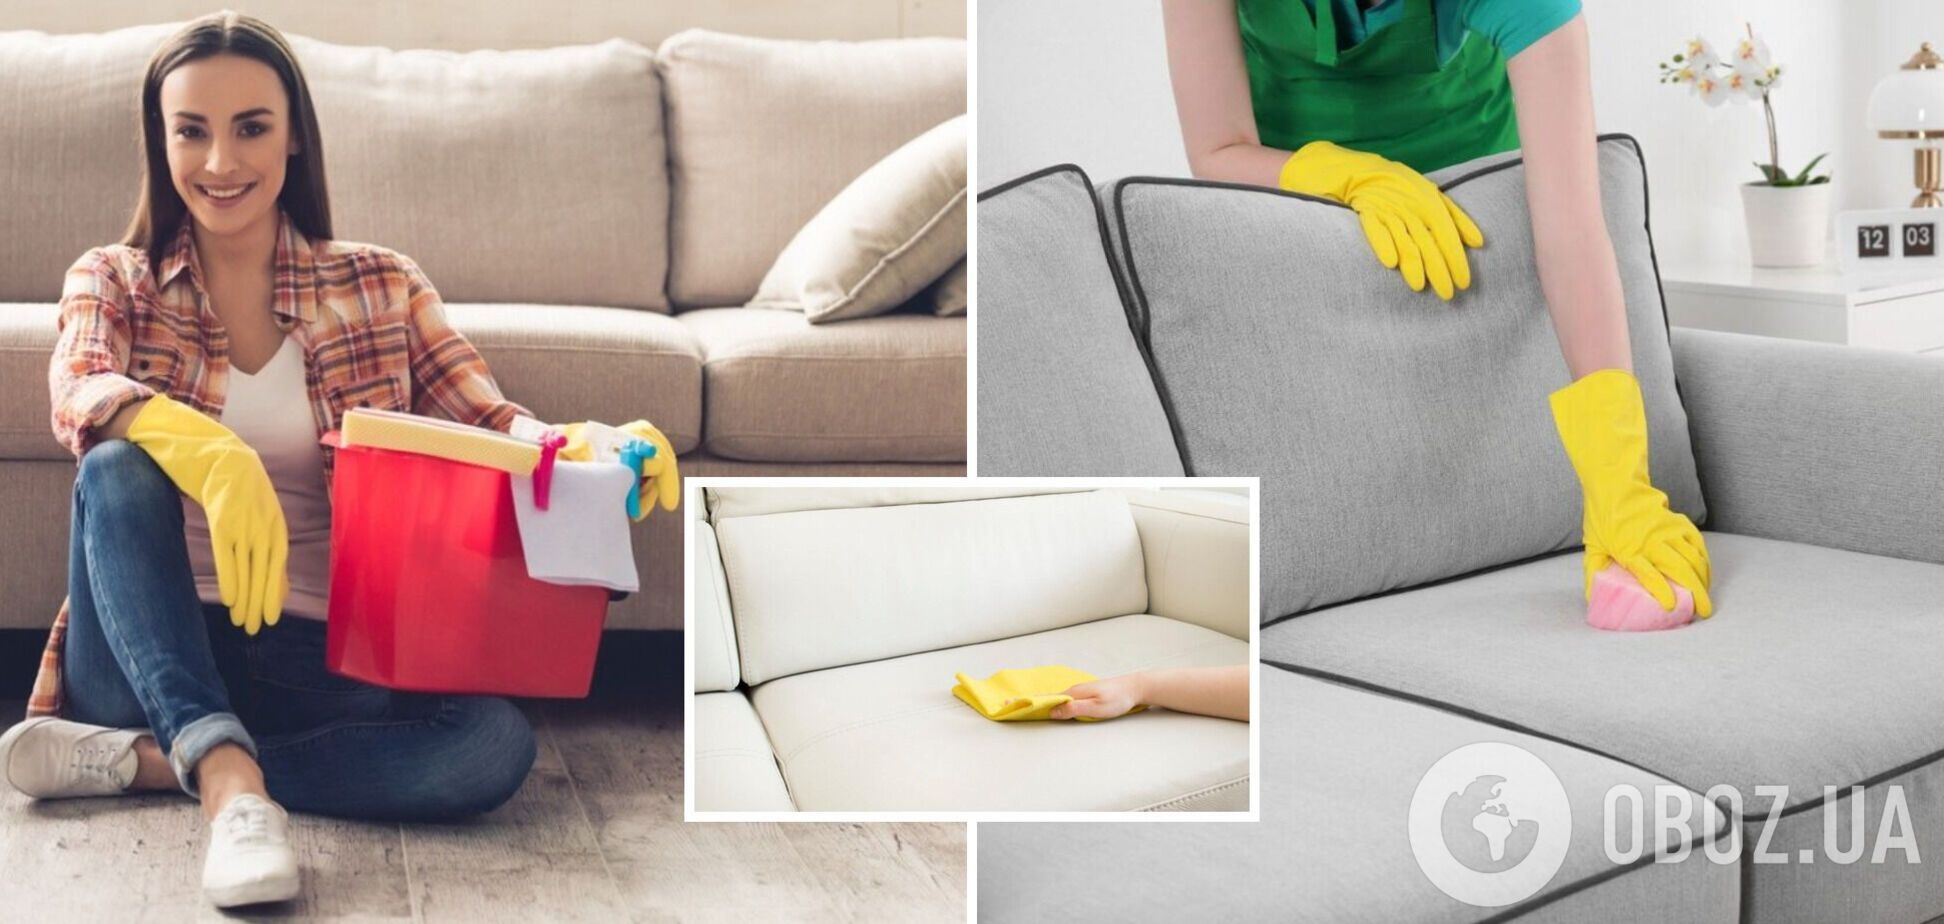 Як почистити засмальцьований диван: плями зникнуть миттєво